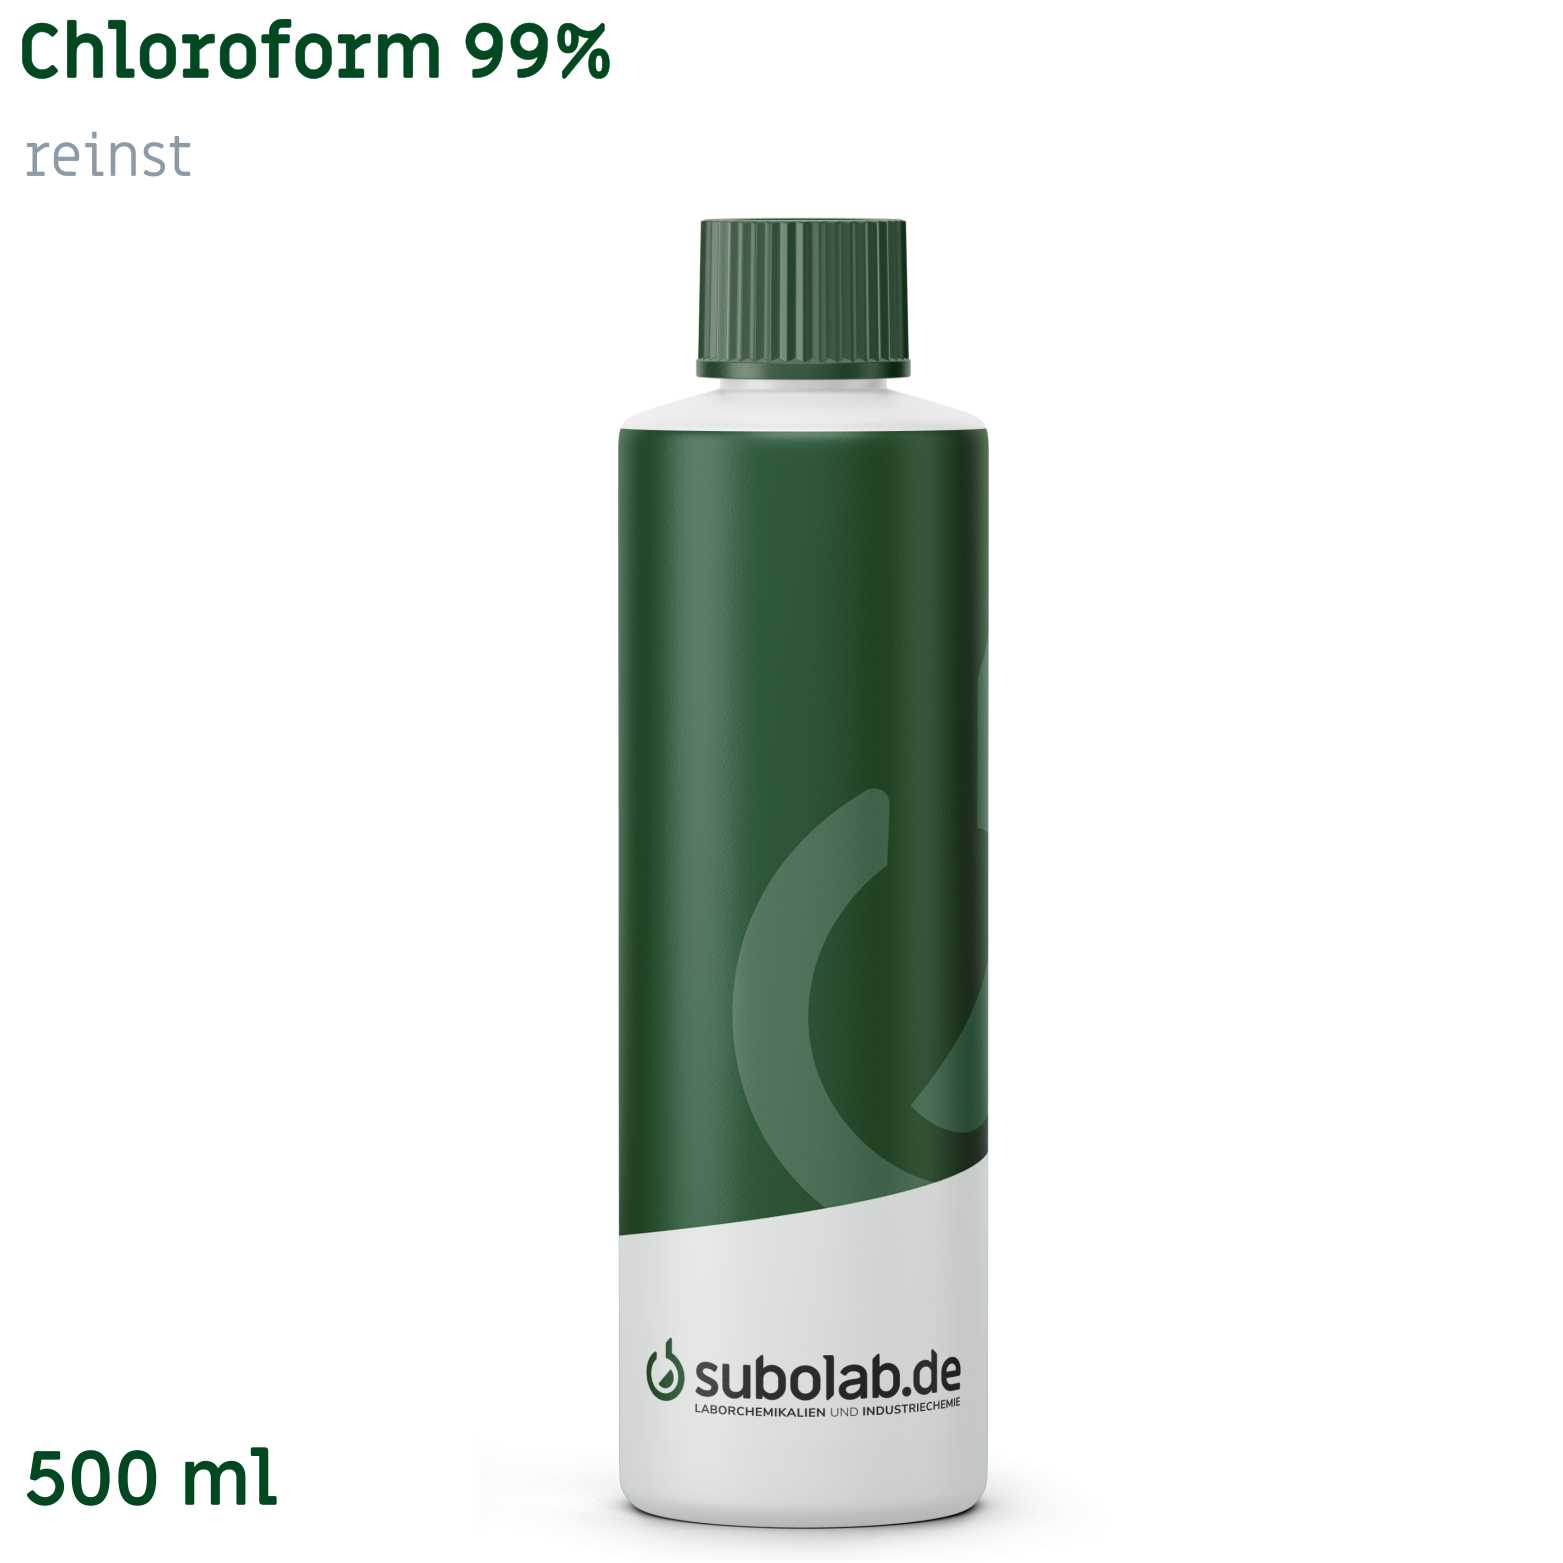 Bild von Chloroform 99% reinst (500 ml)